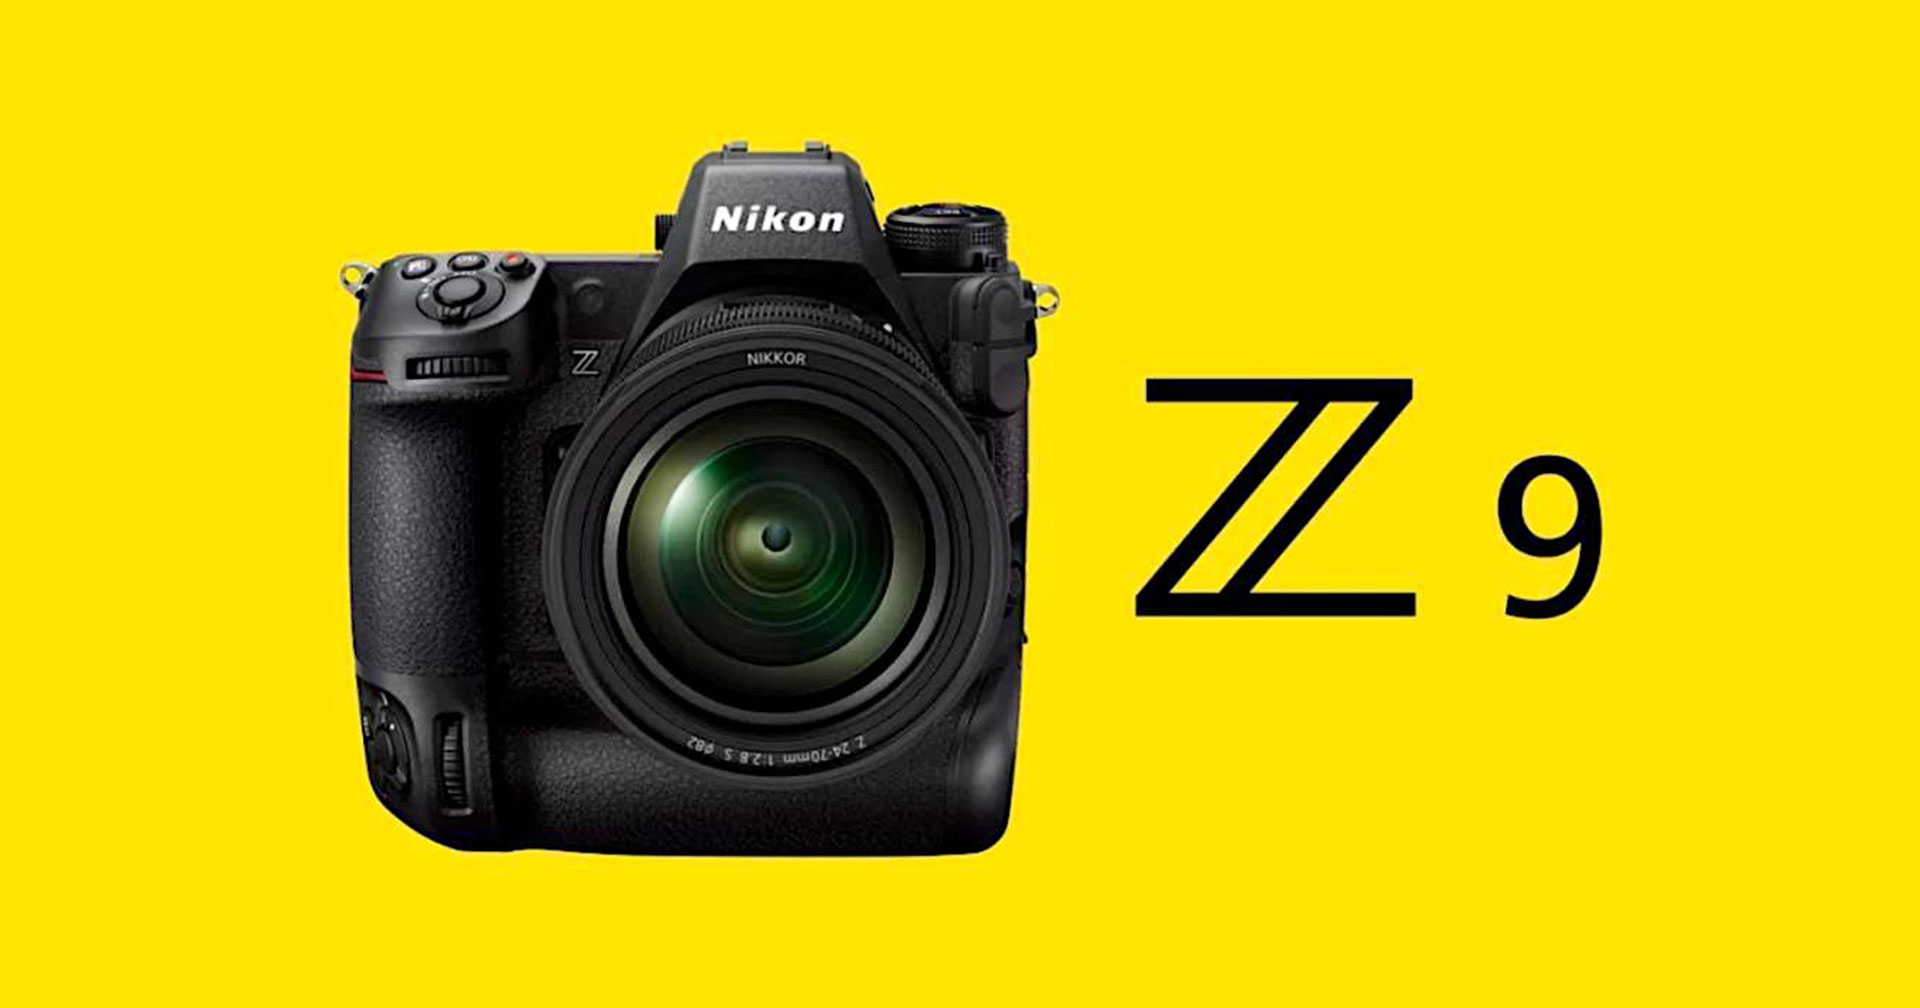 เอาจริง!? ห้างดังในญี่ปุ่นจะเริ่มส่งมอบกล้อง Nikon Z9 อีกครั้ง เดือน ต.ค. 2022